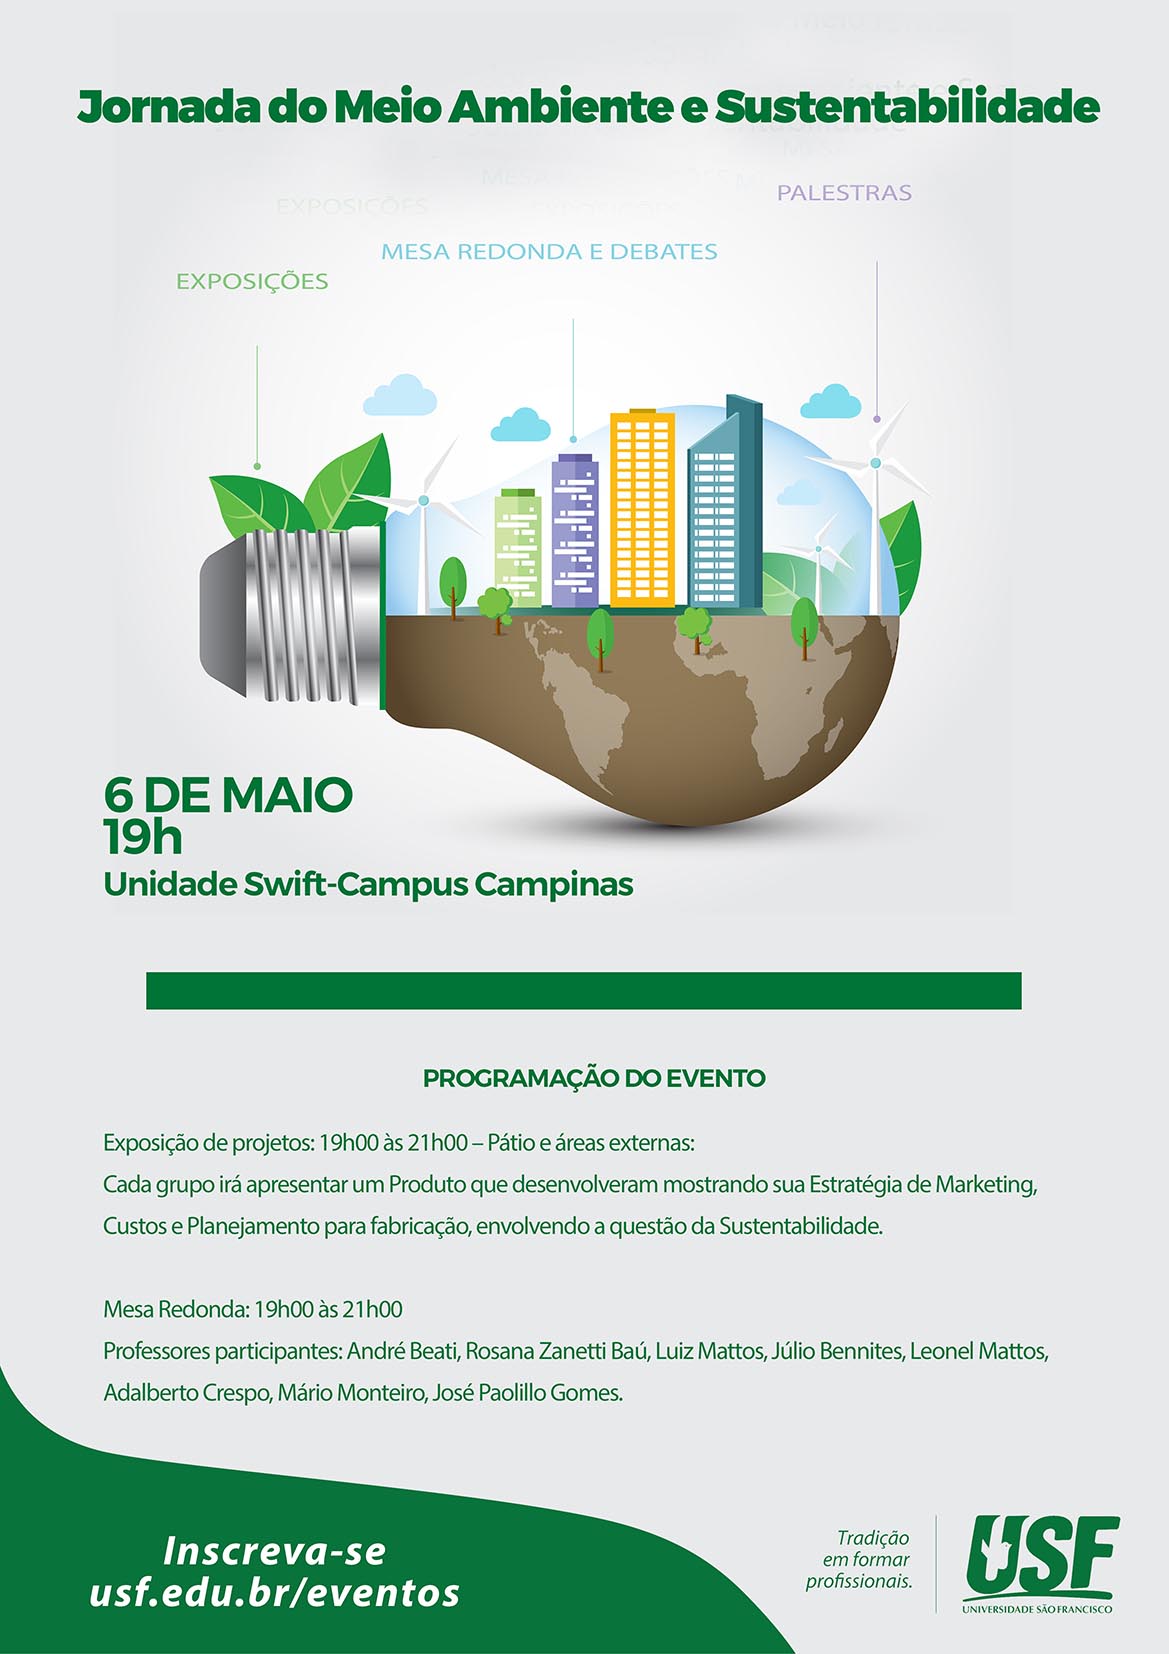 Jornada do Meio Ambiente e Sustentabilidade